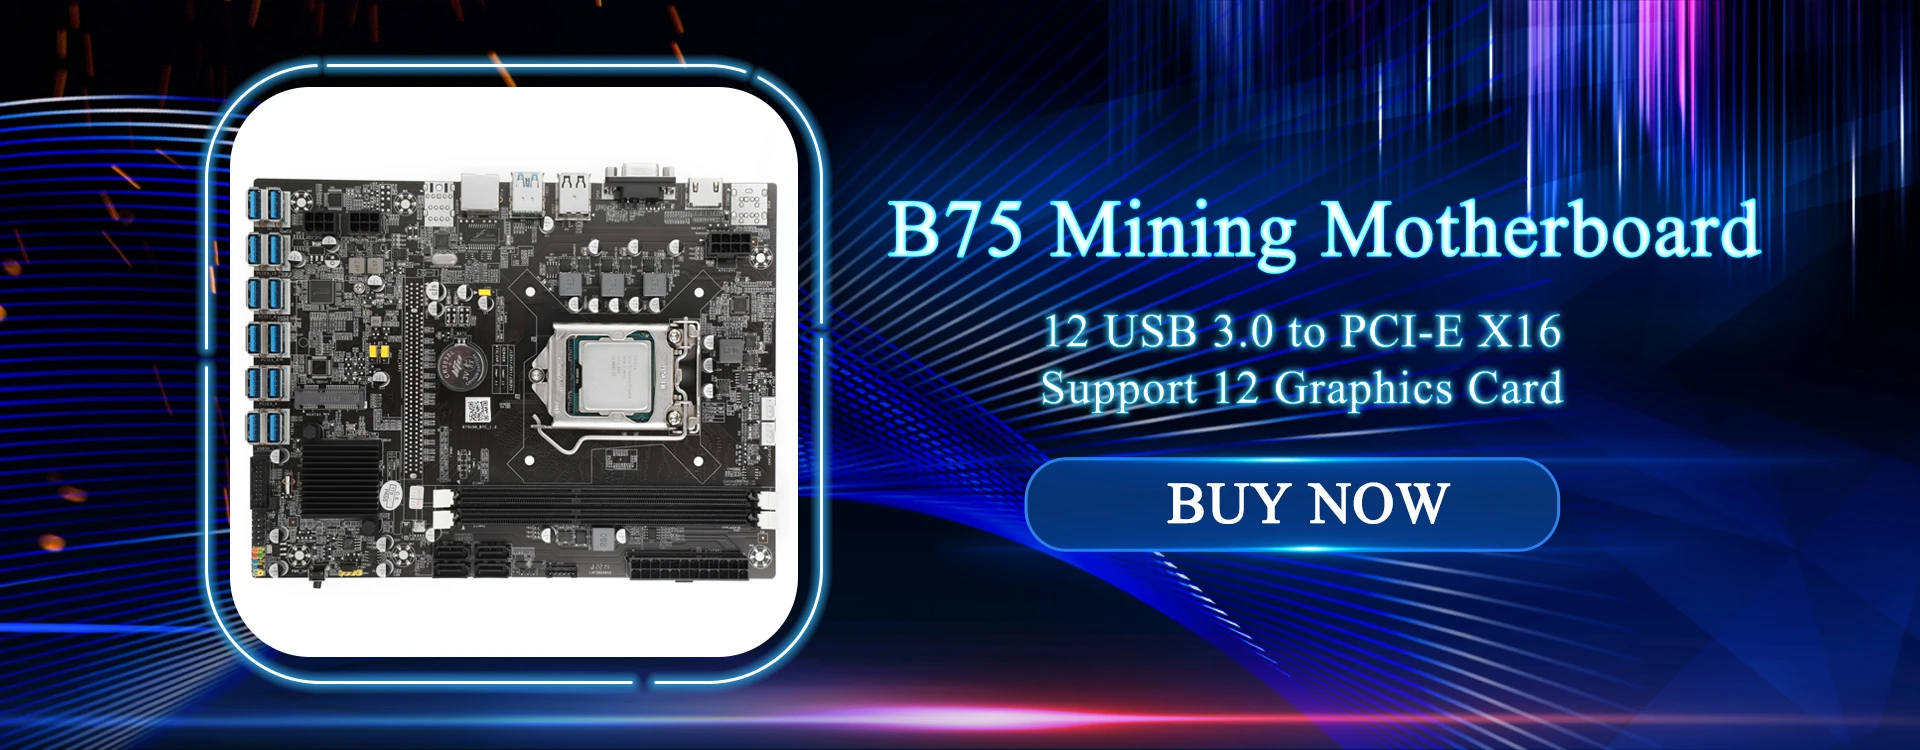 B75 Mining Motherboard 8 USB 3.0 to PCIE X16 PCI-E 16X LGA 1155 Random CPU DDR3 SATA HD Bitcoin BTC ETH Miner budget pc motherboard